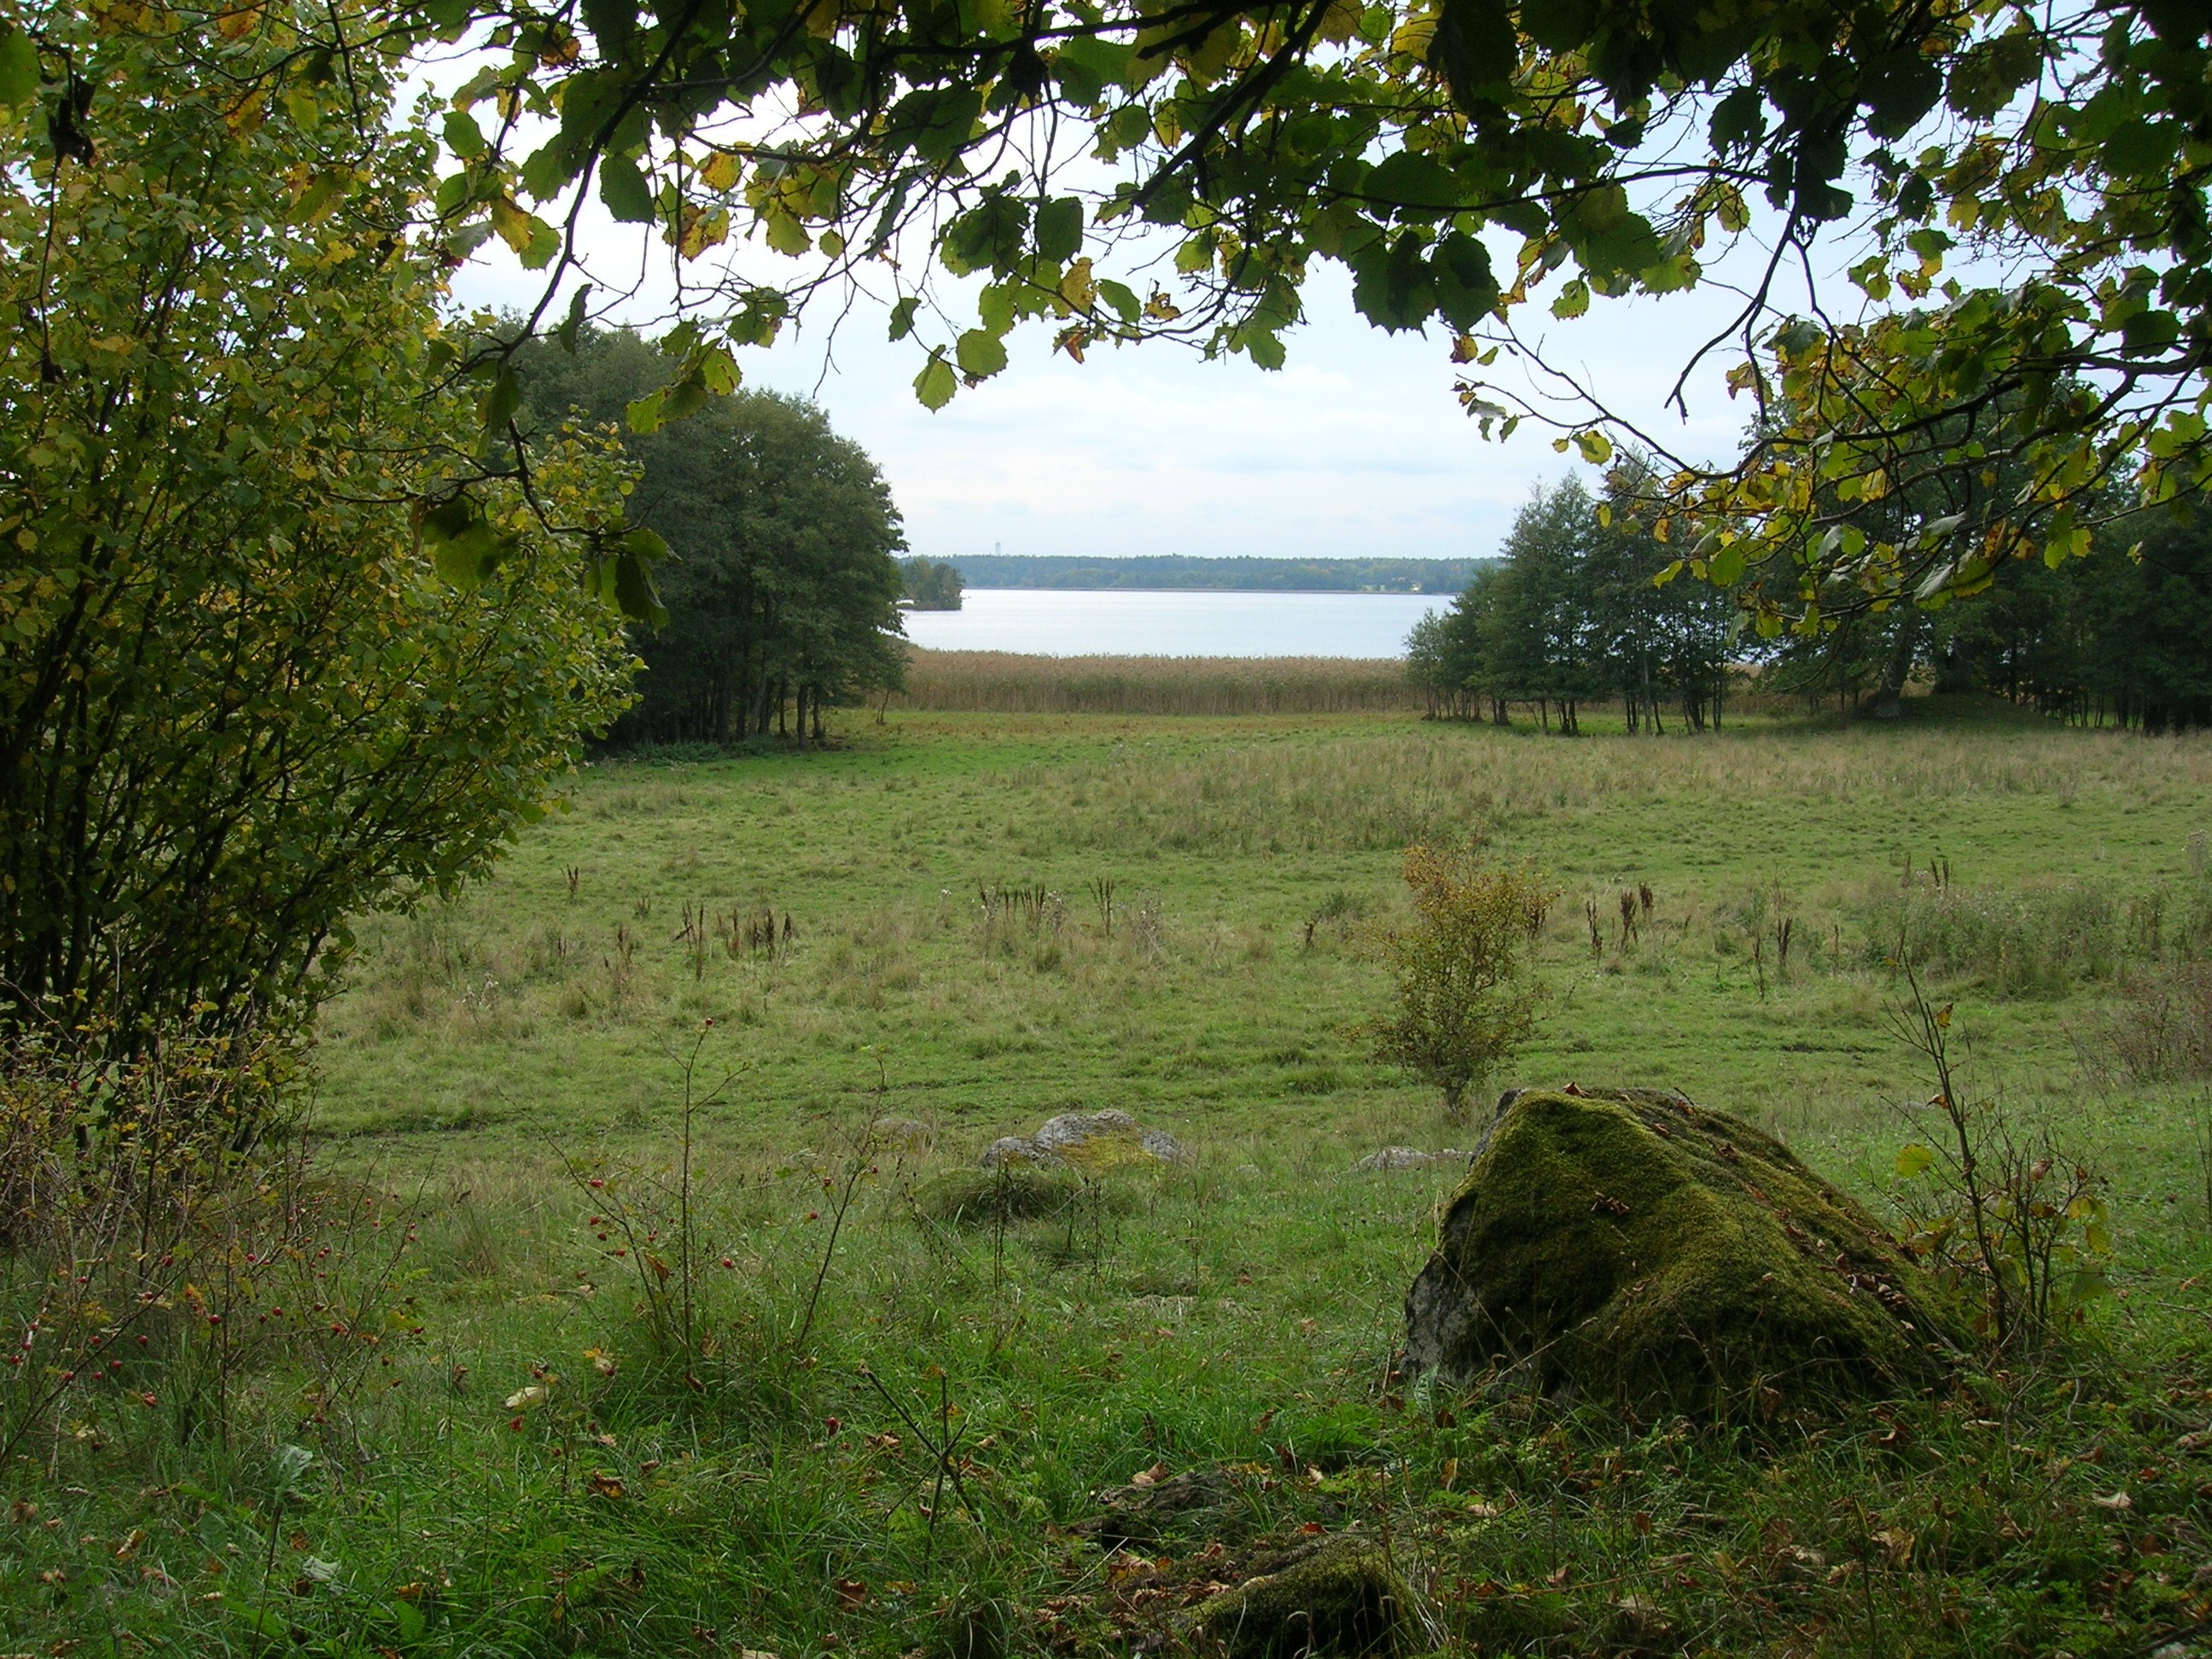 En öppen gräsmark med inslag av lövträd. I bakgrunden finns vass och utsikt över sjön.